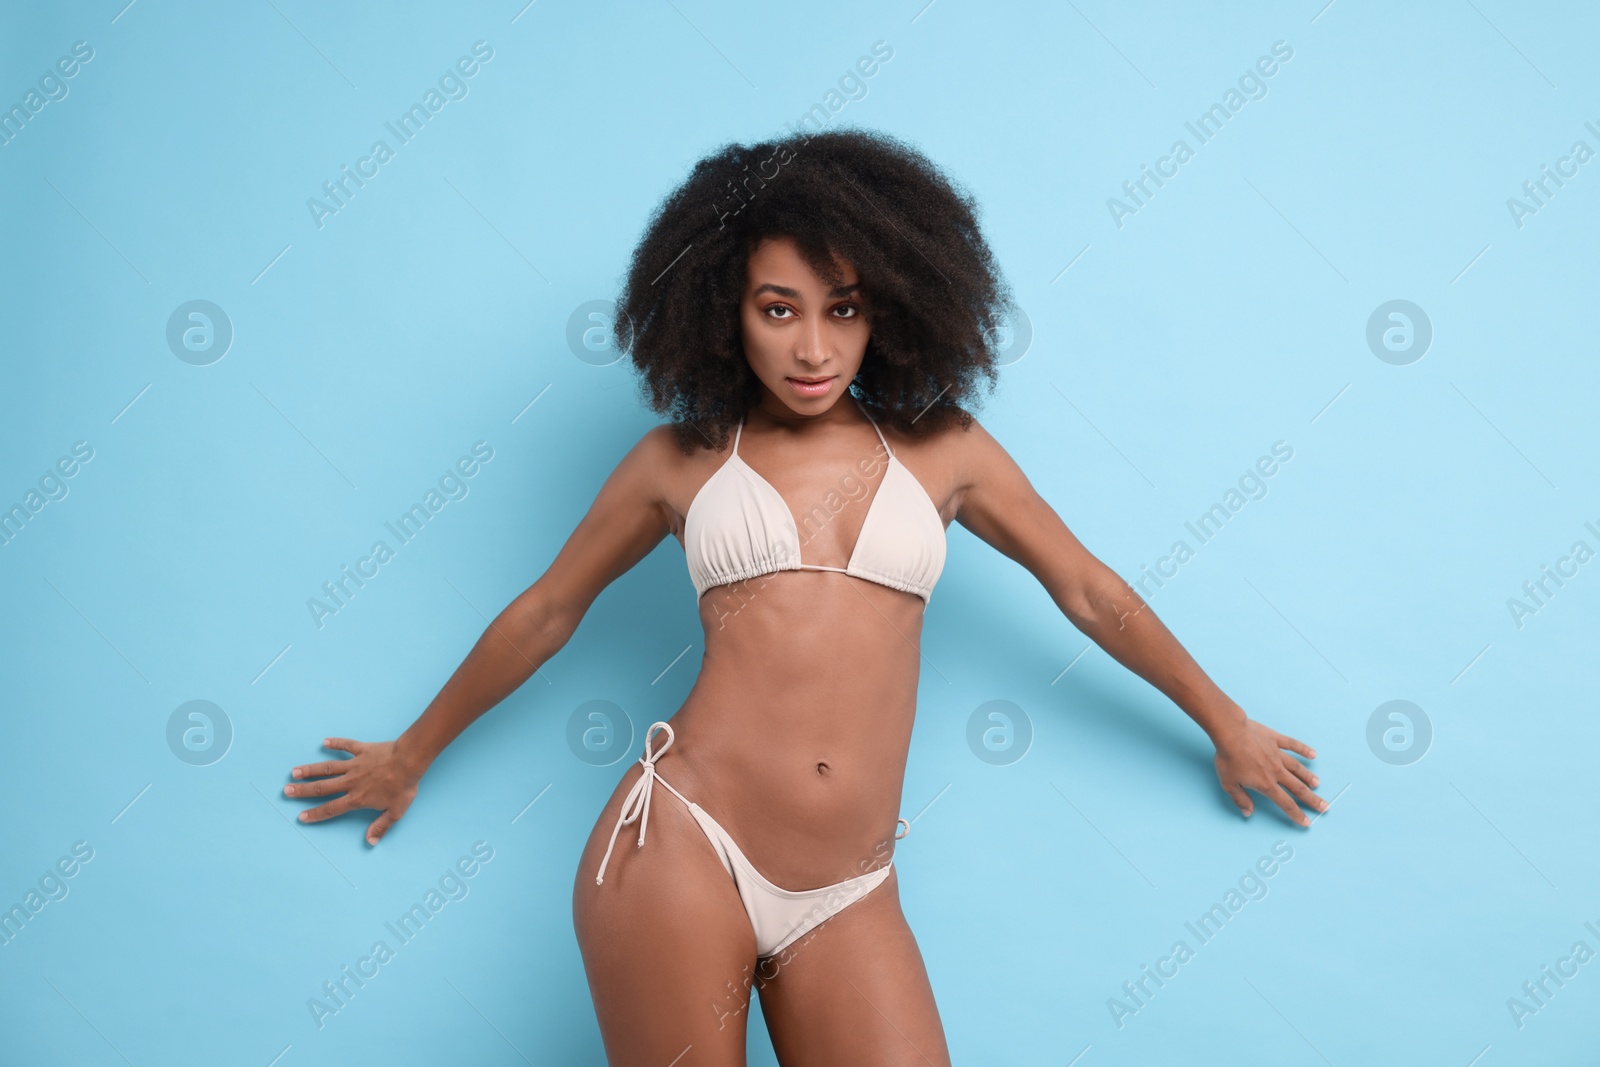 Photo of Beautiful woman in stylish bikini on light blue background